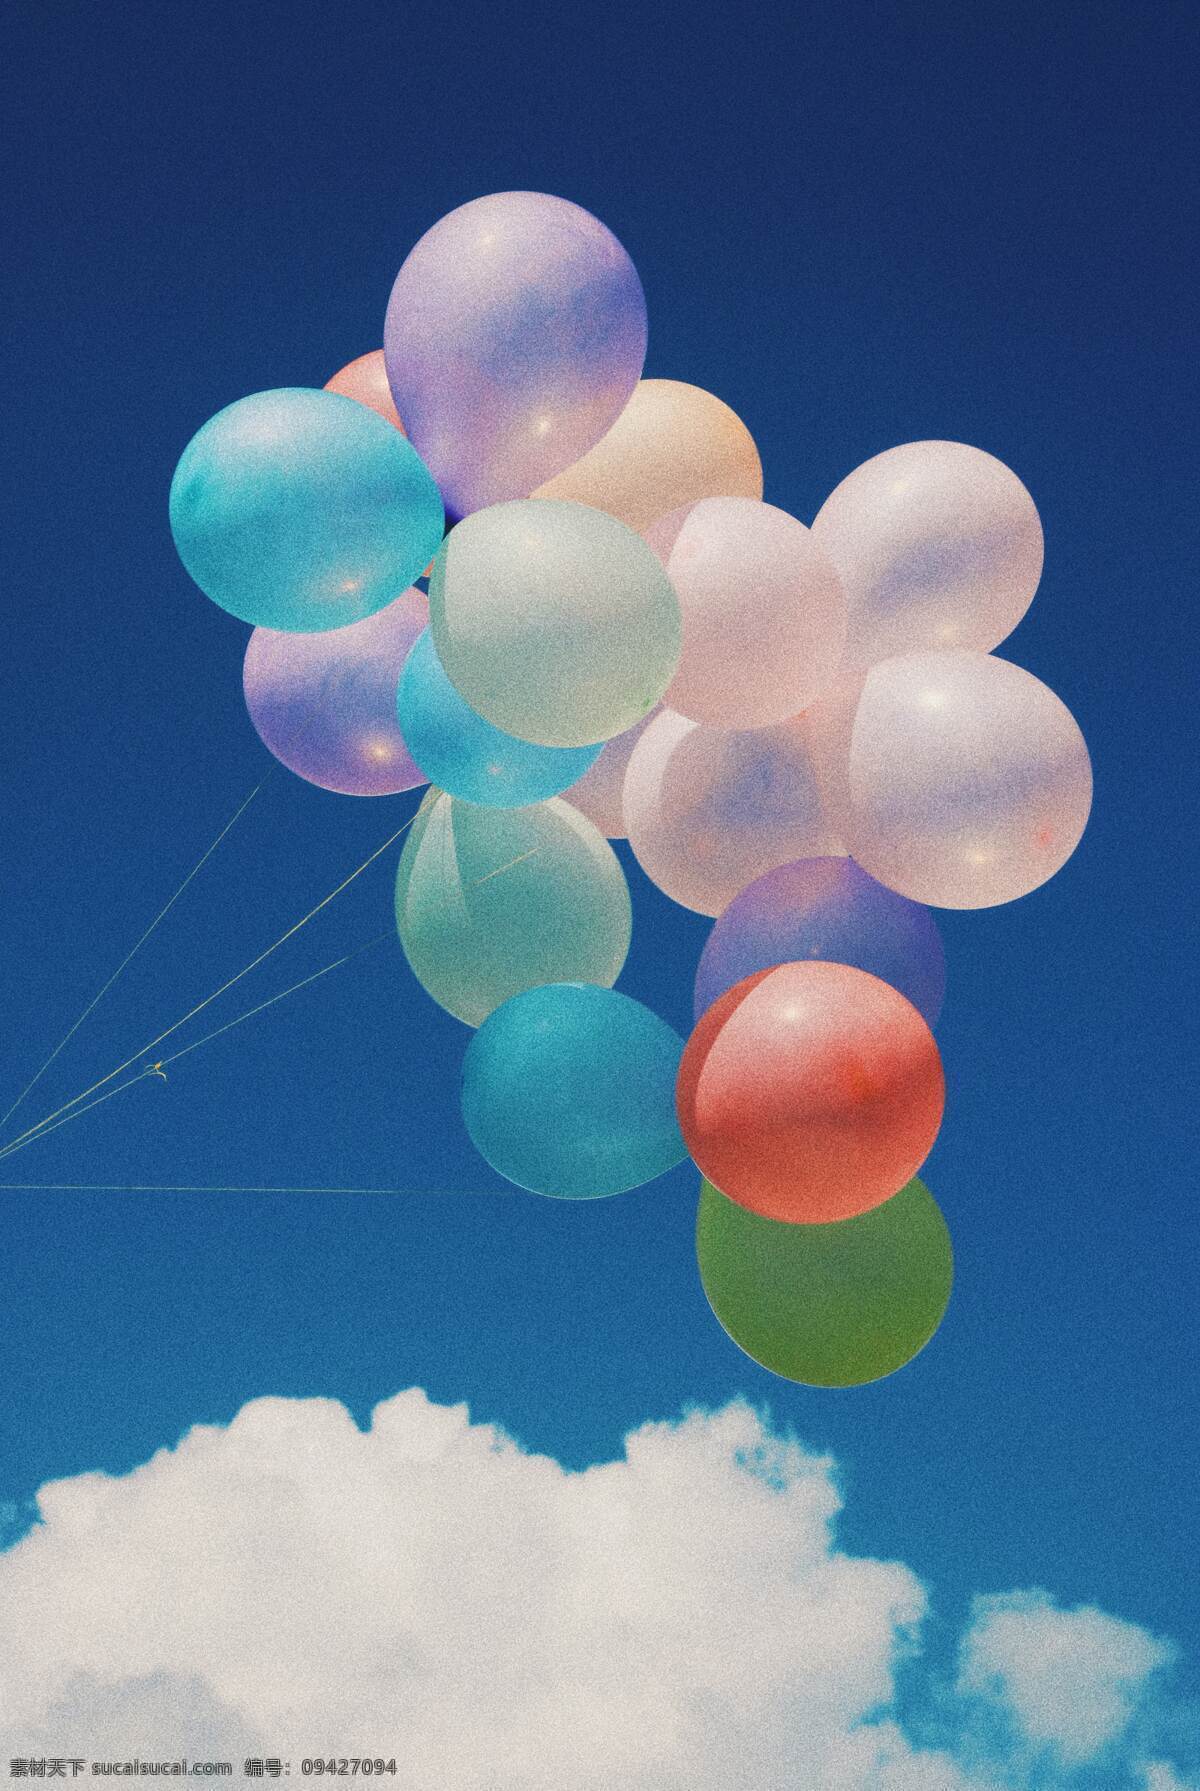 天空 蓝天 晴天 白云 拍照 照片 拍摄 气球造型 氢气球 派对 庆祝 生活百科 娱乐休闲